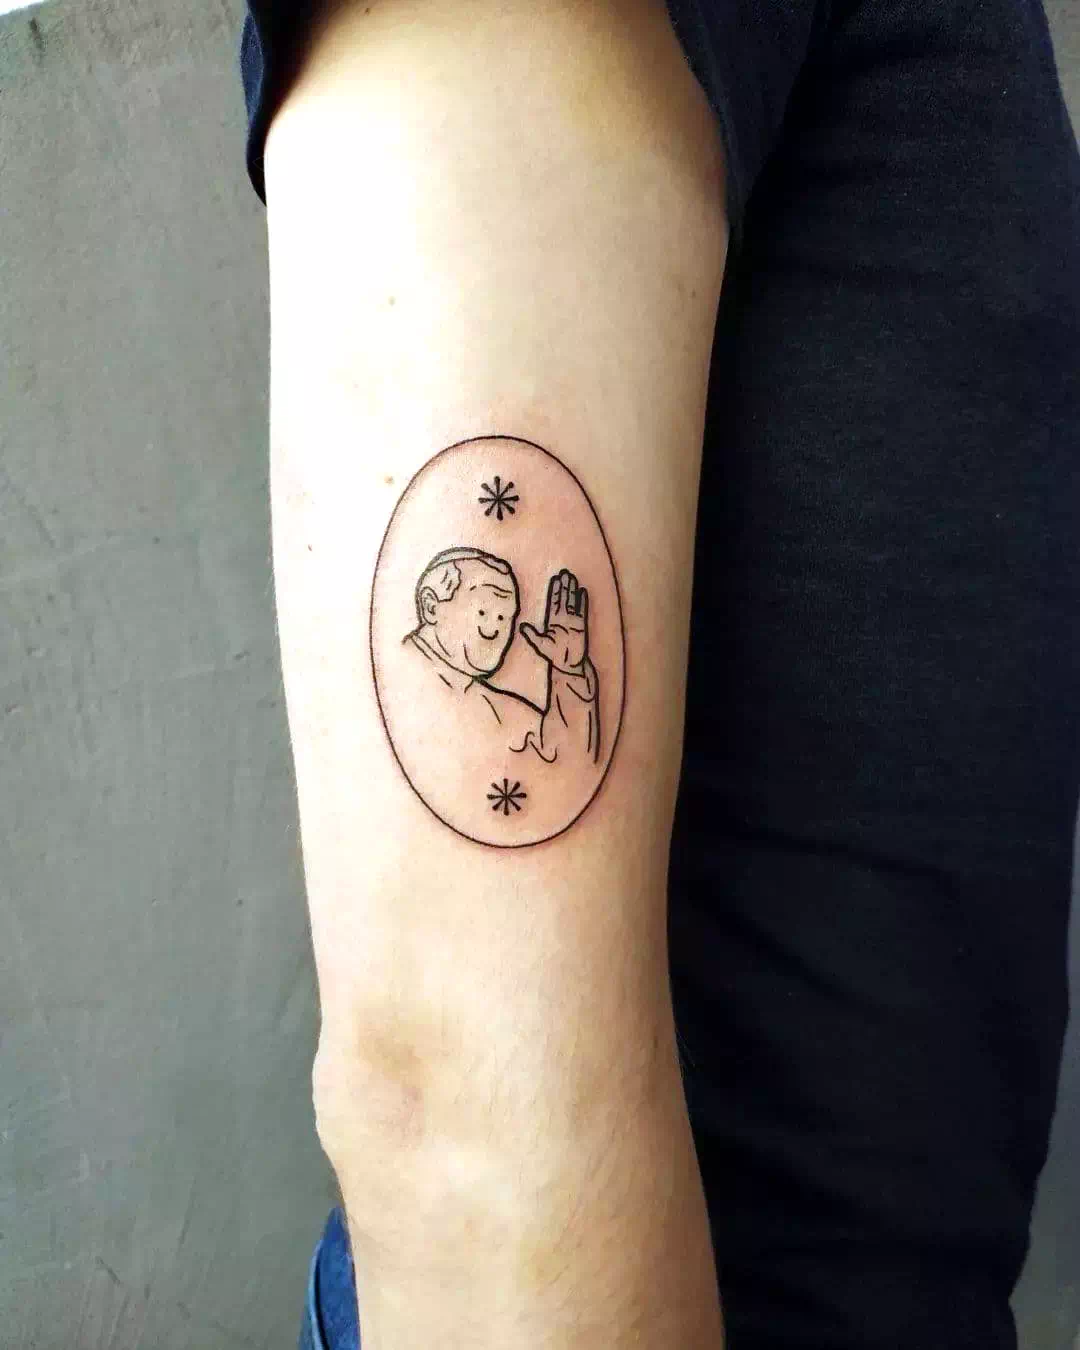 Tatuaje de una sonrisa gigante en el brazo Diseño negro